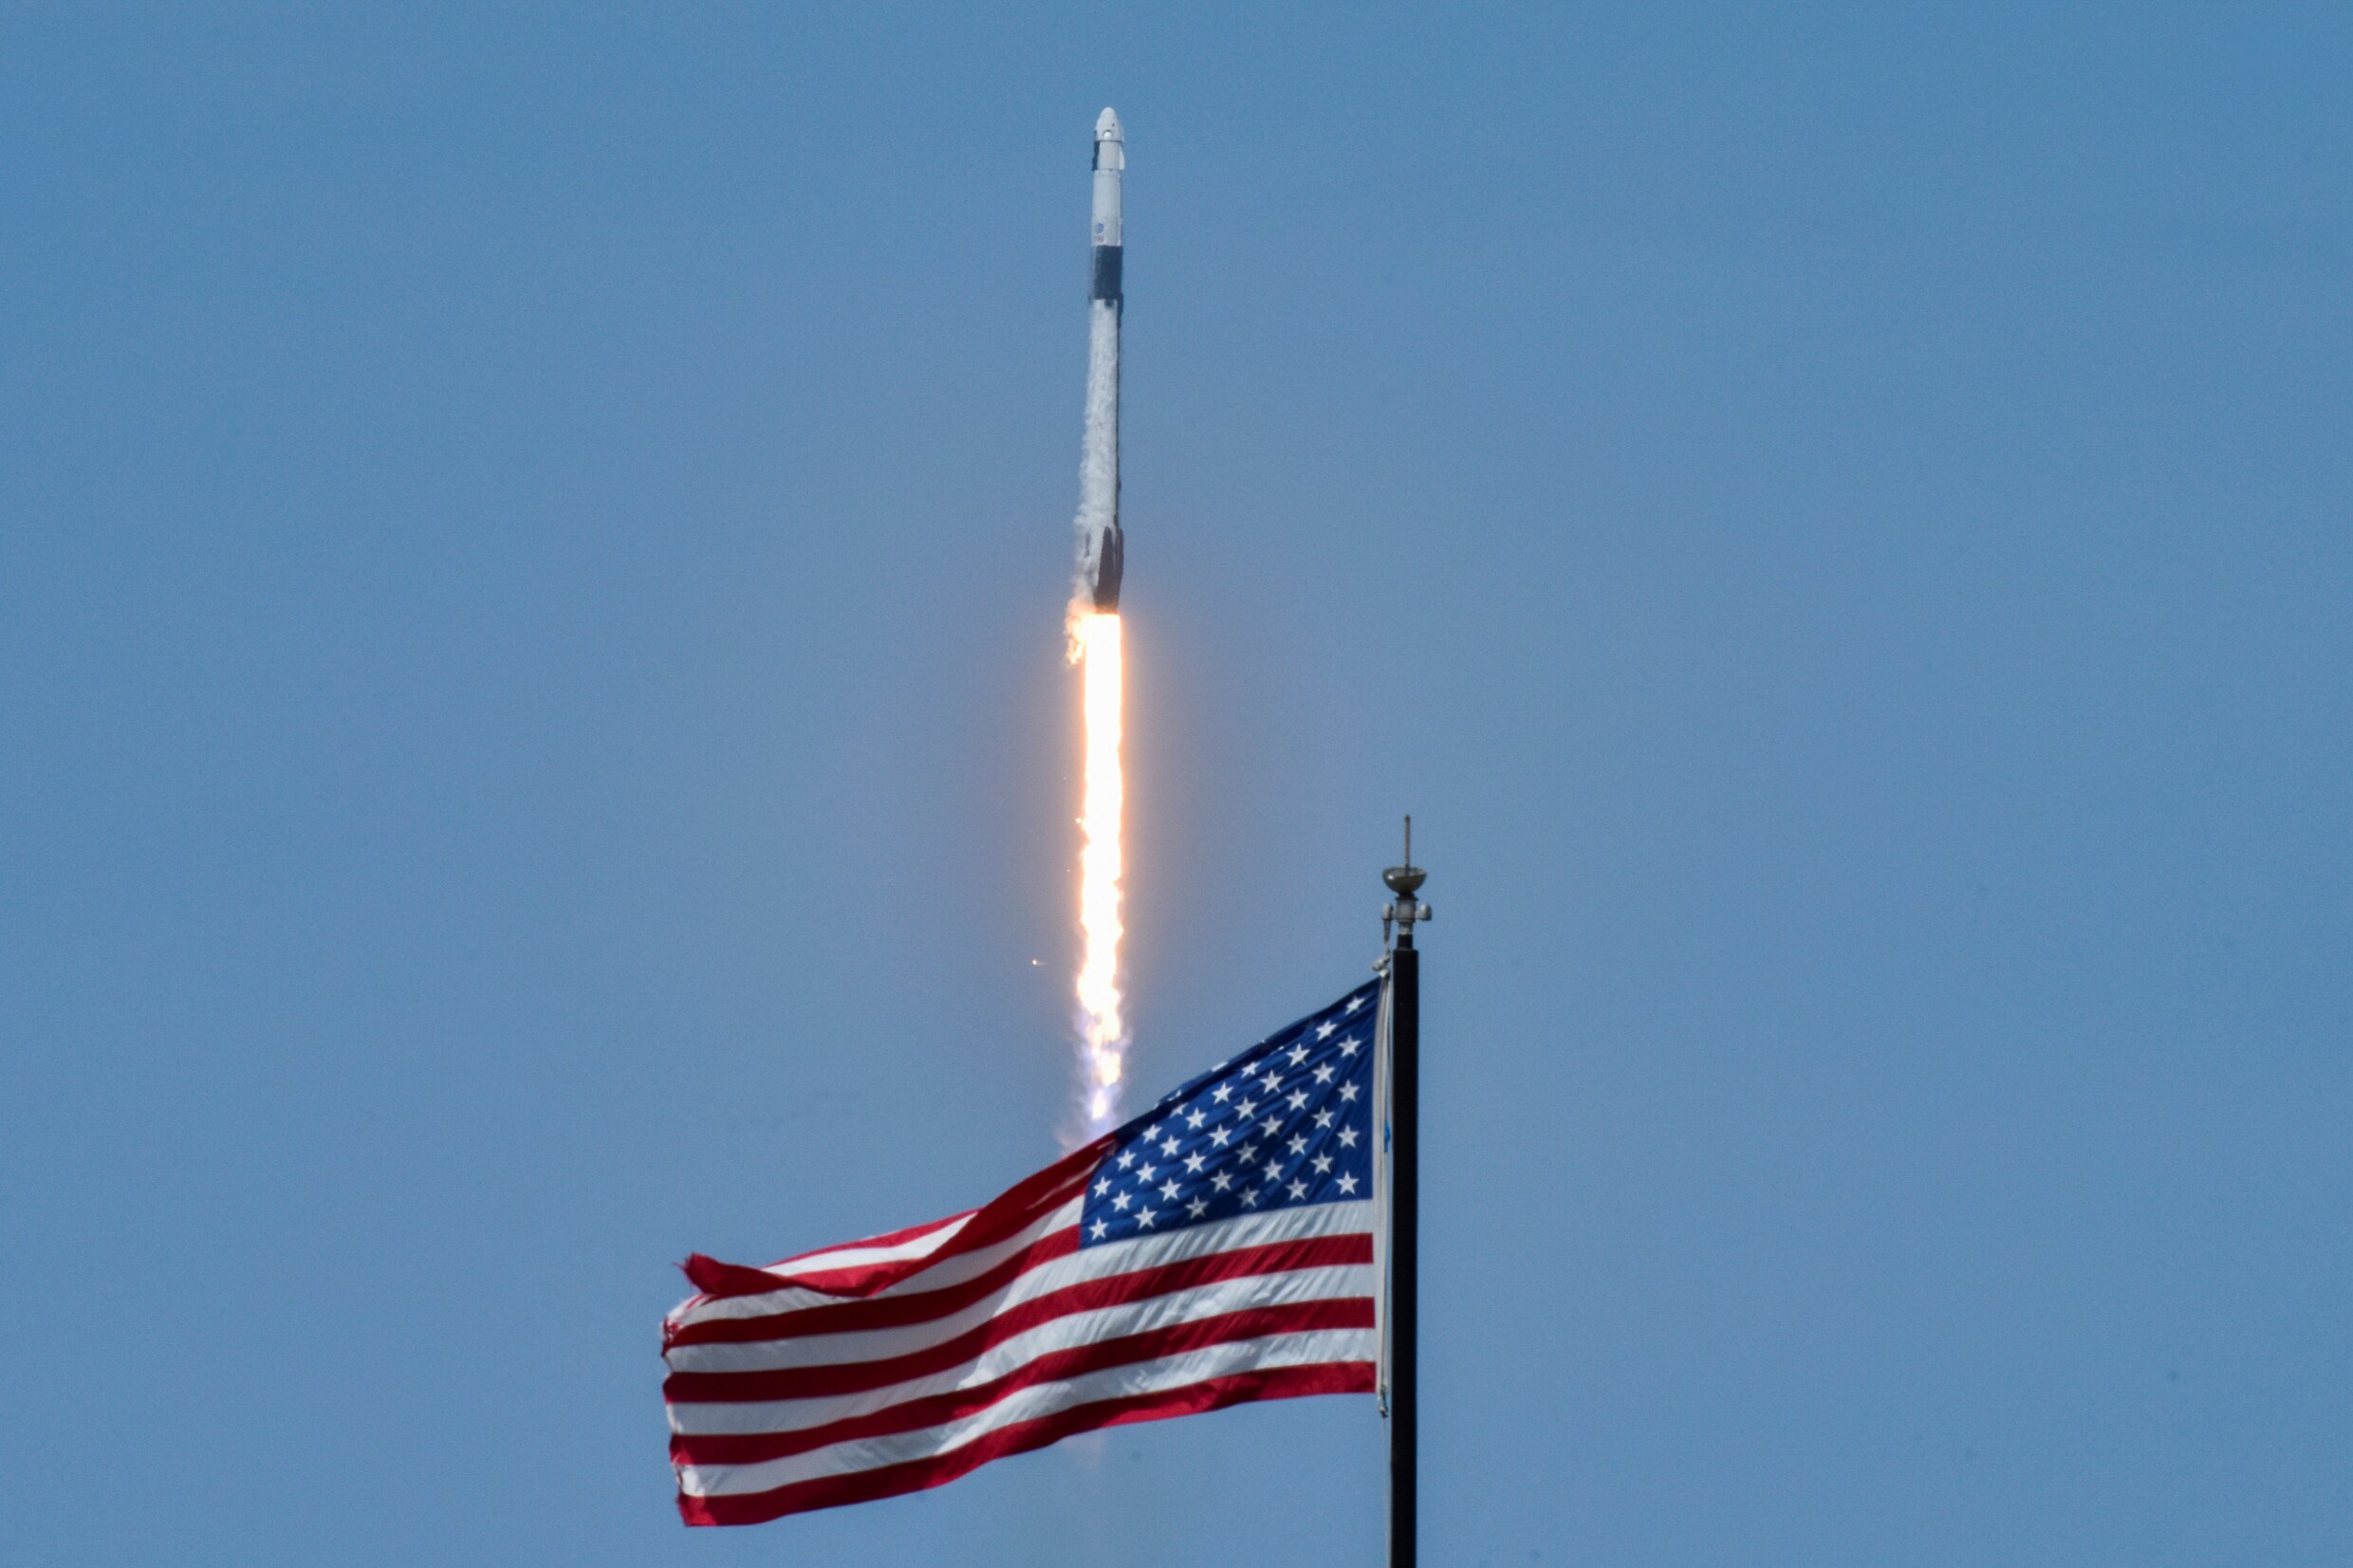 Historische ruimtevlucht van SpaceX geslaagd: bekijk hier de beelden